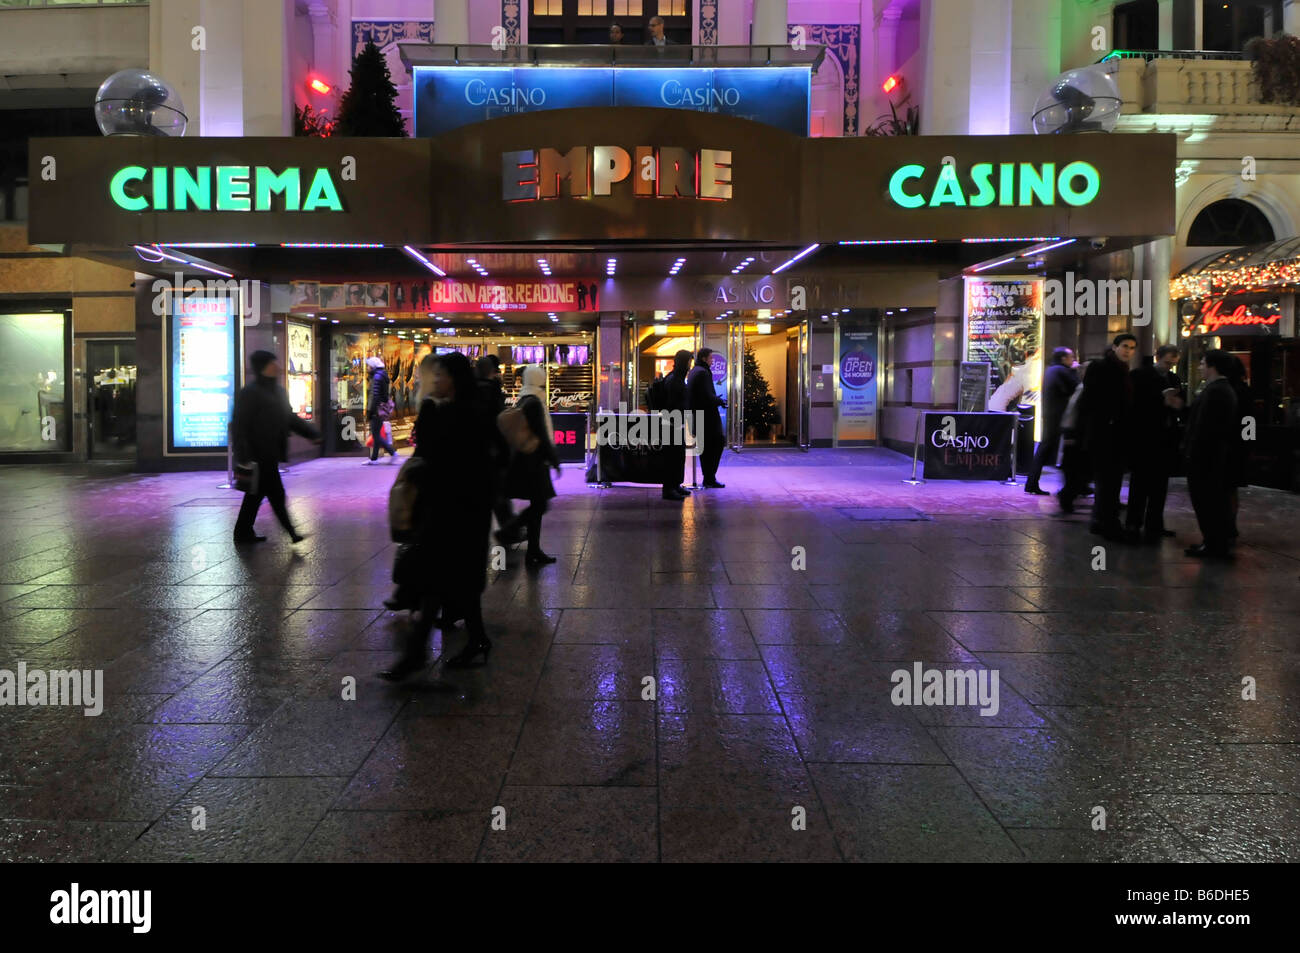 Personas en el pavimento fuera de Empire Leicester Square cine casino locales de entretenimiento cerise coloreado iluminación de inundación Londres, Inglaterra, Reino Unido Foto de stock